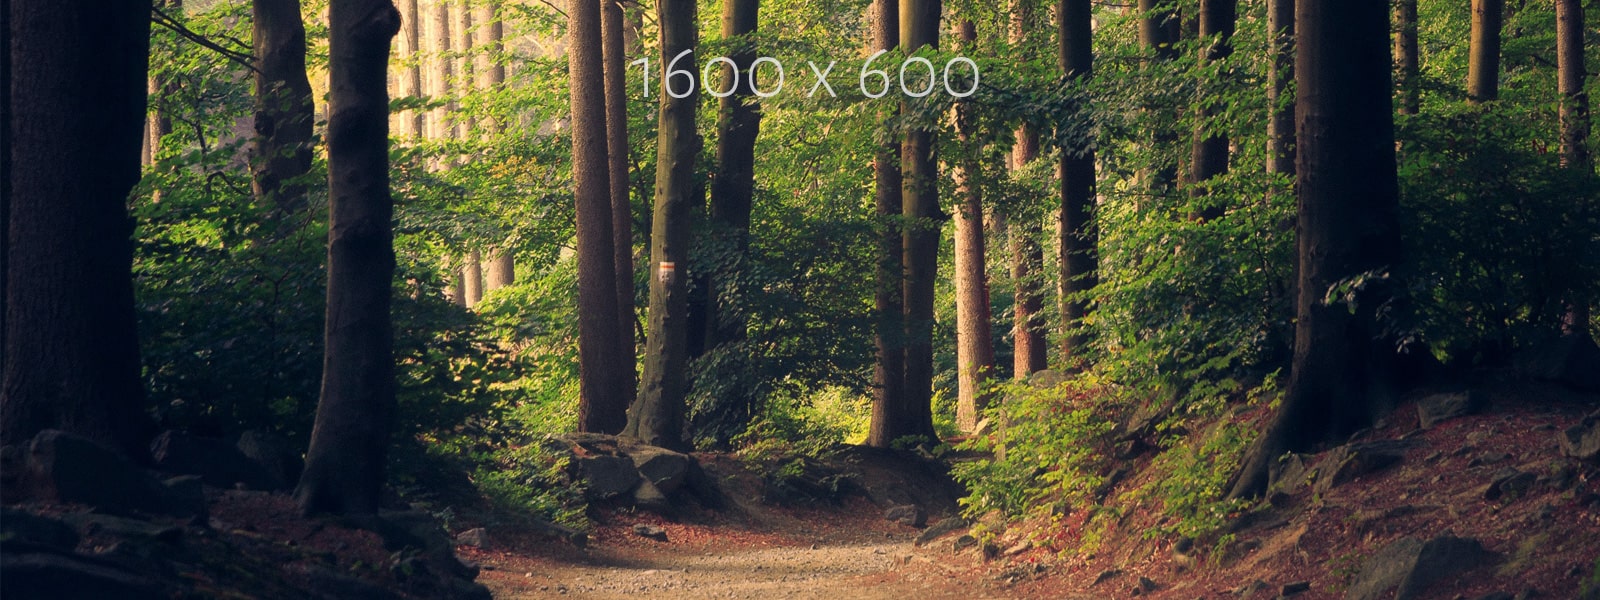 1600 x 600 trees